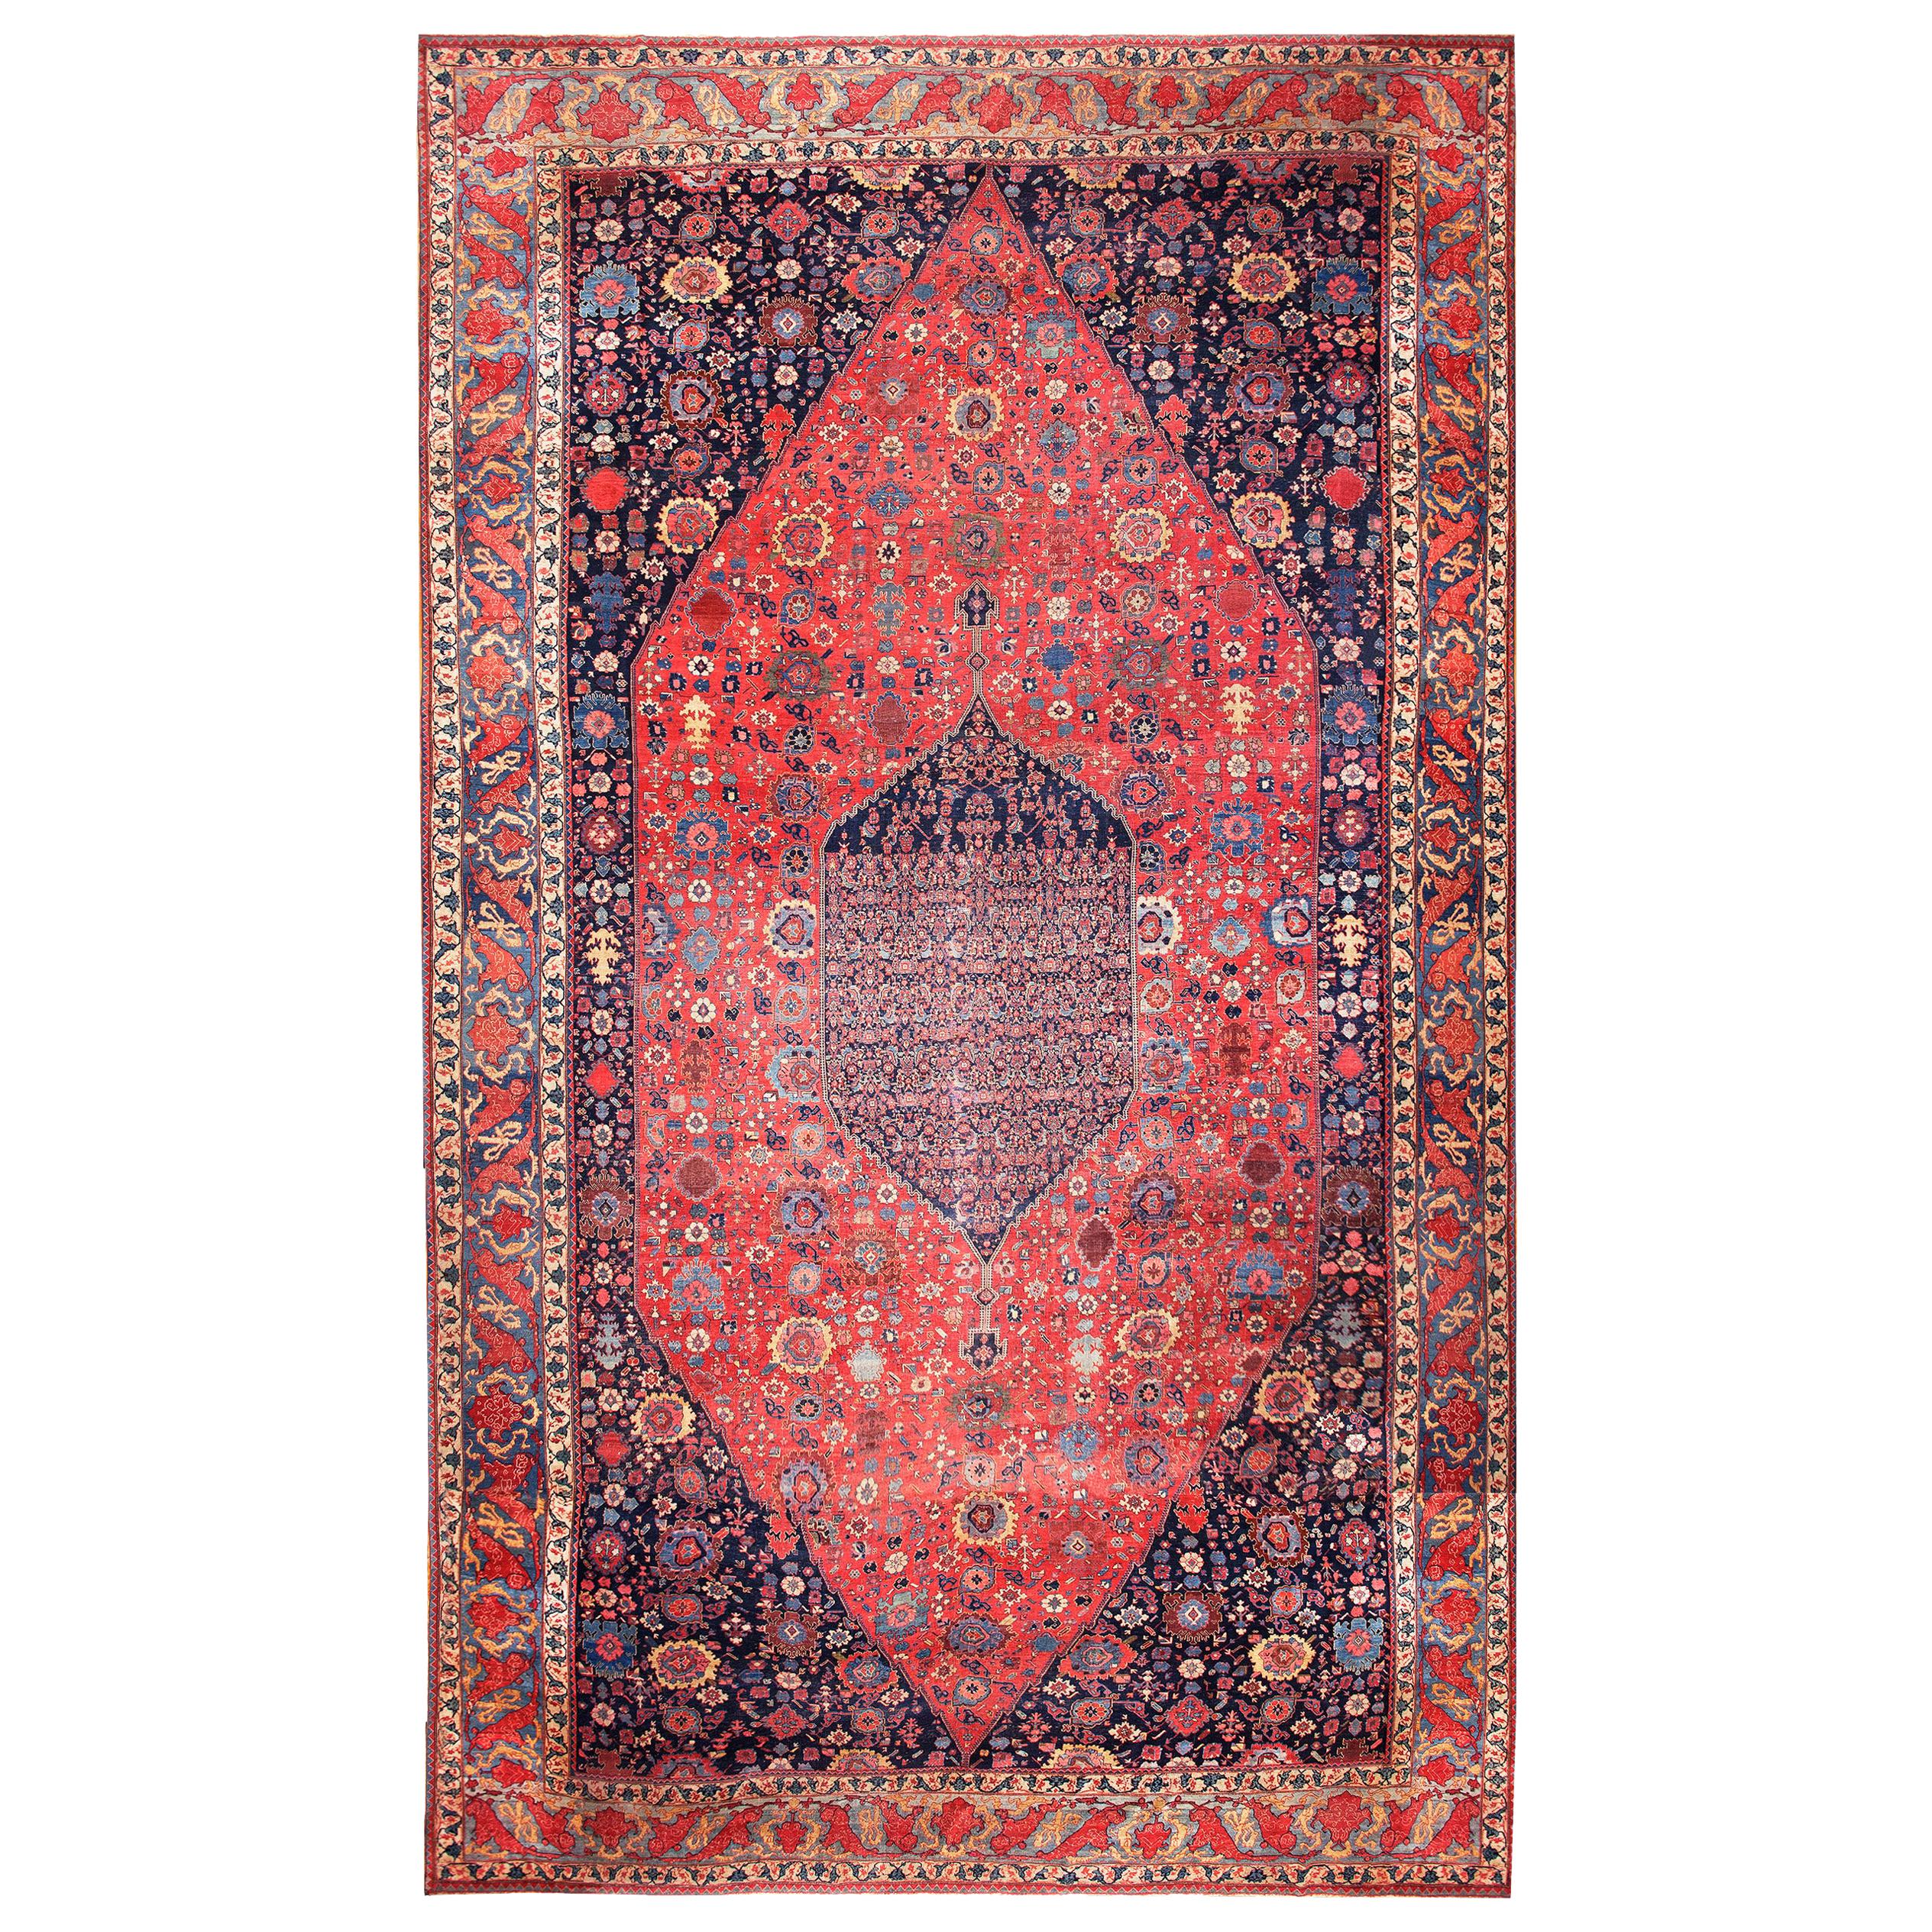 Persischer Bijar-Teppich des 19. Jahrhunderts ( 15'6" x 27'10" - 472 x 848)